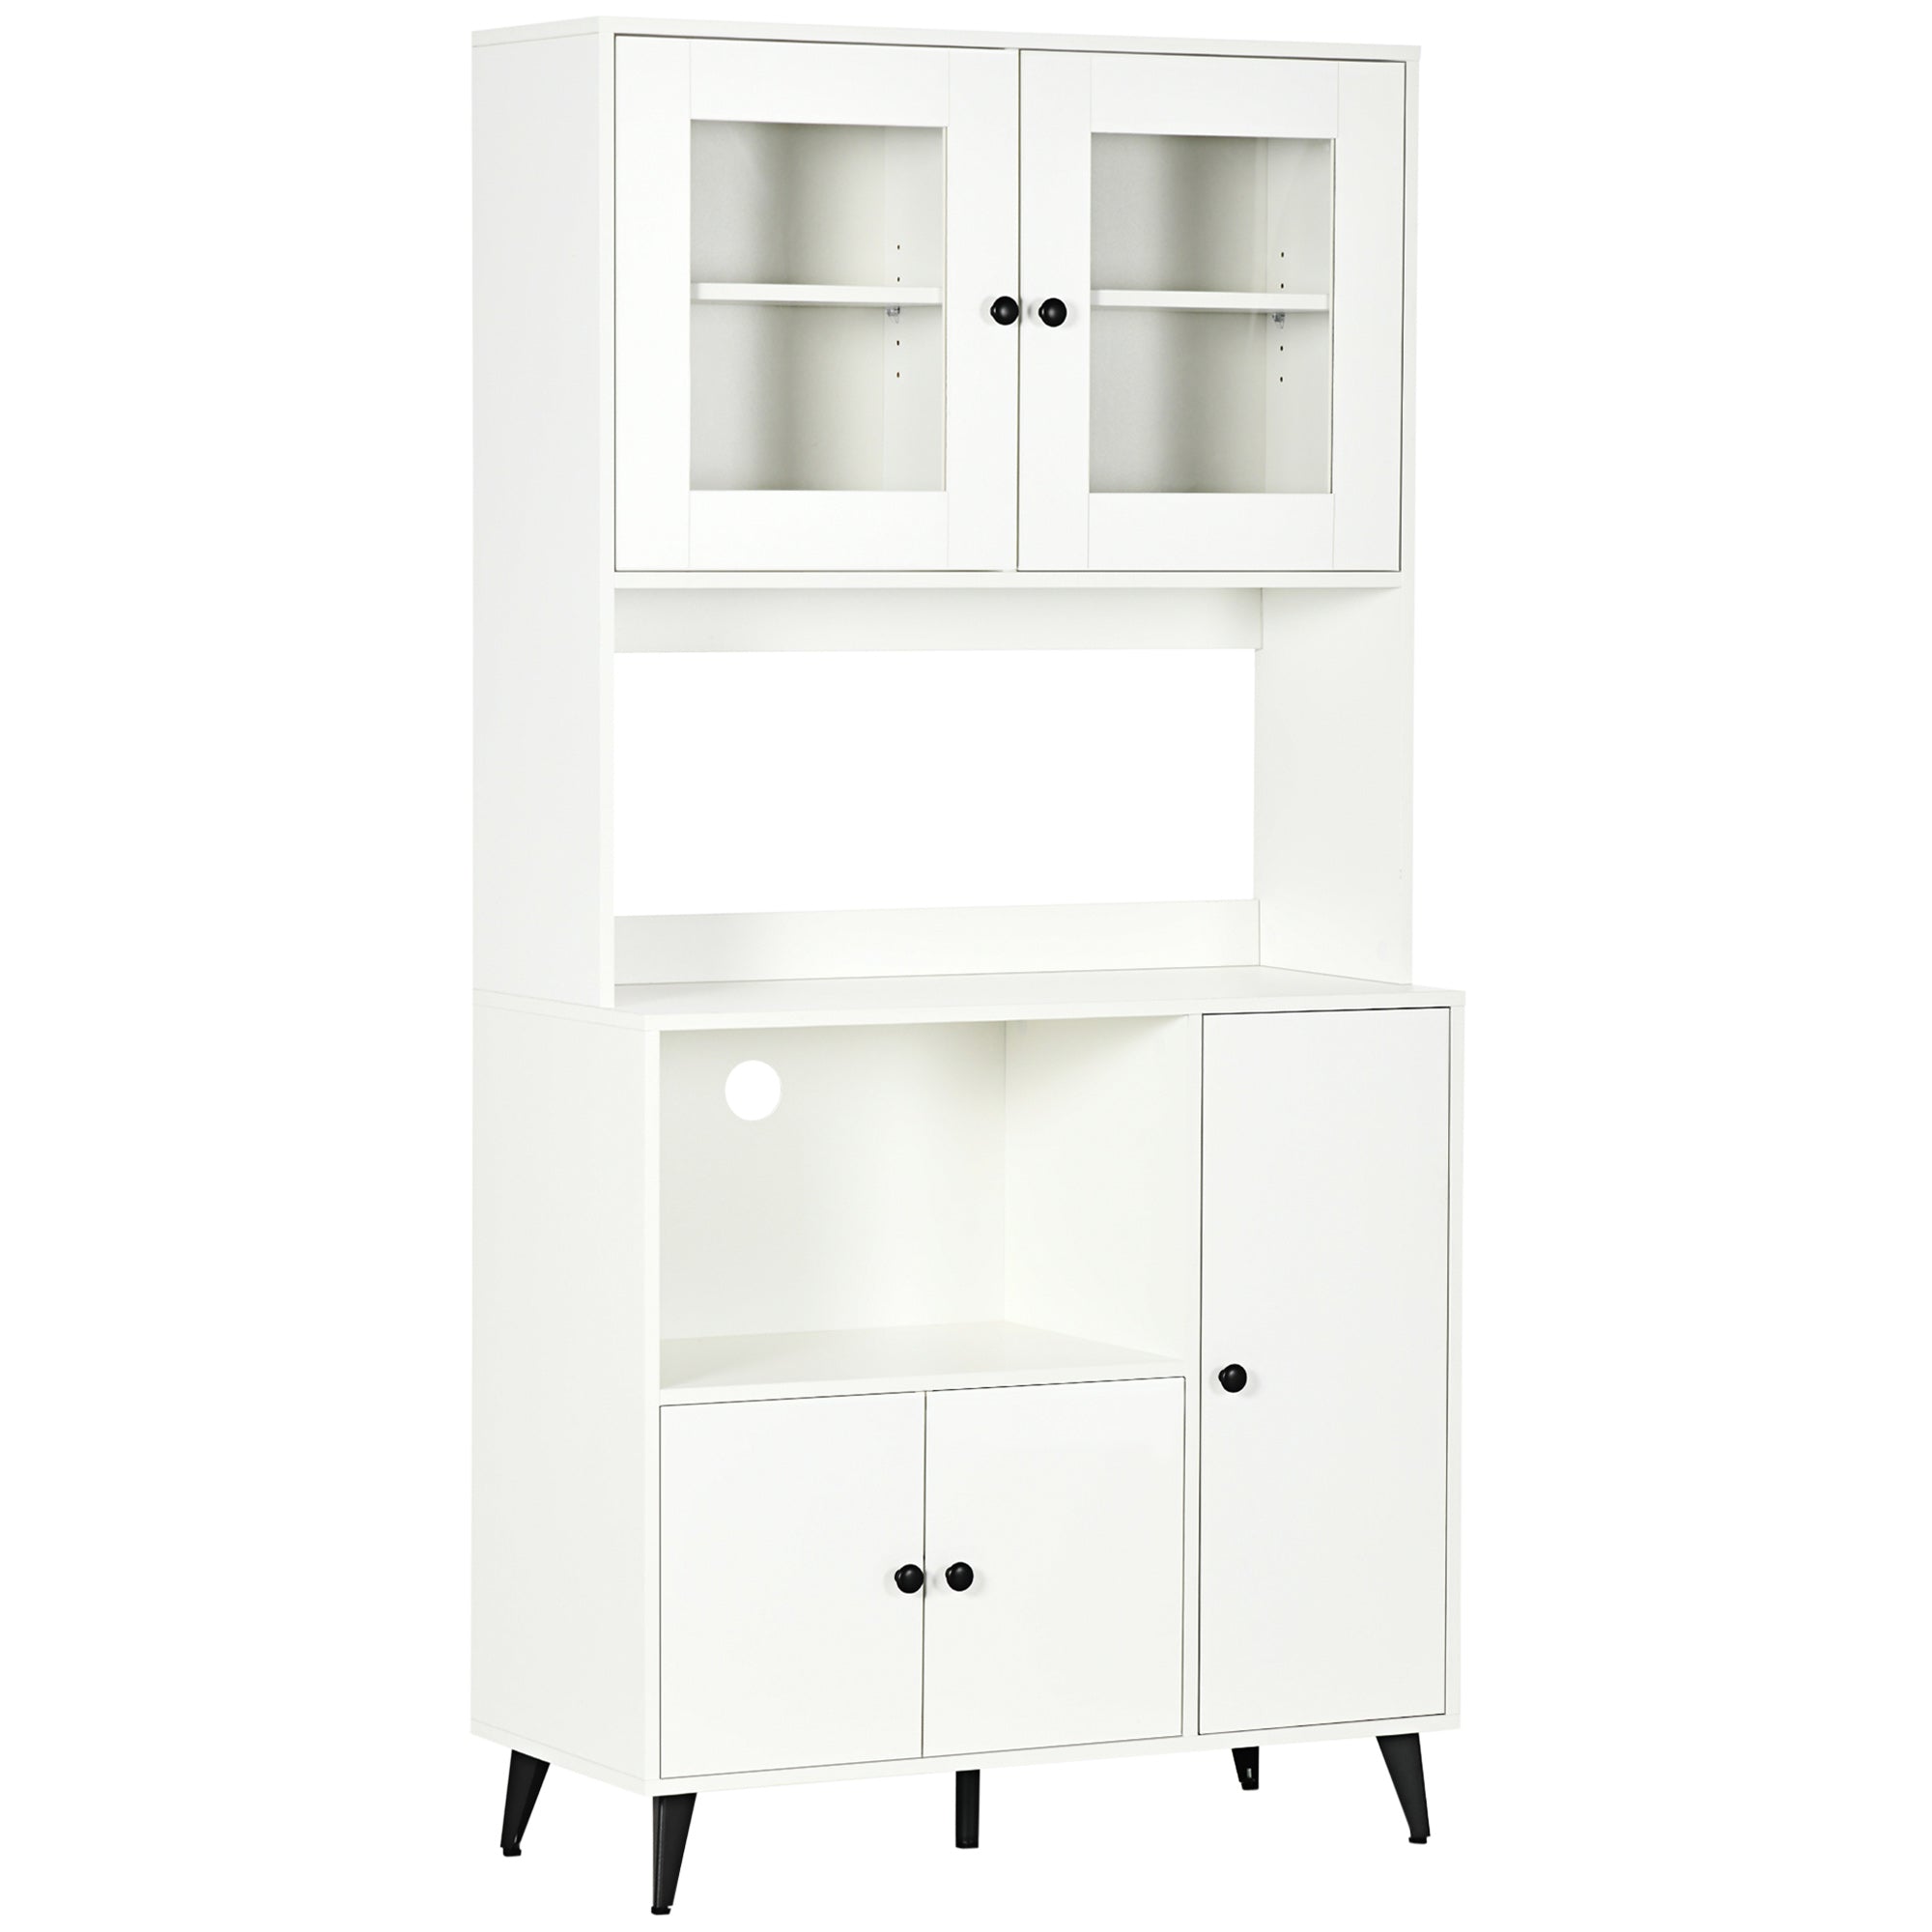 HOMCOM Freestanding Kitchen Storage Cabinet Cupboards Adjustable Shelves White  | TJ Hughes